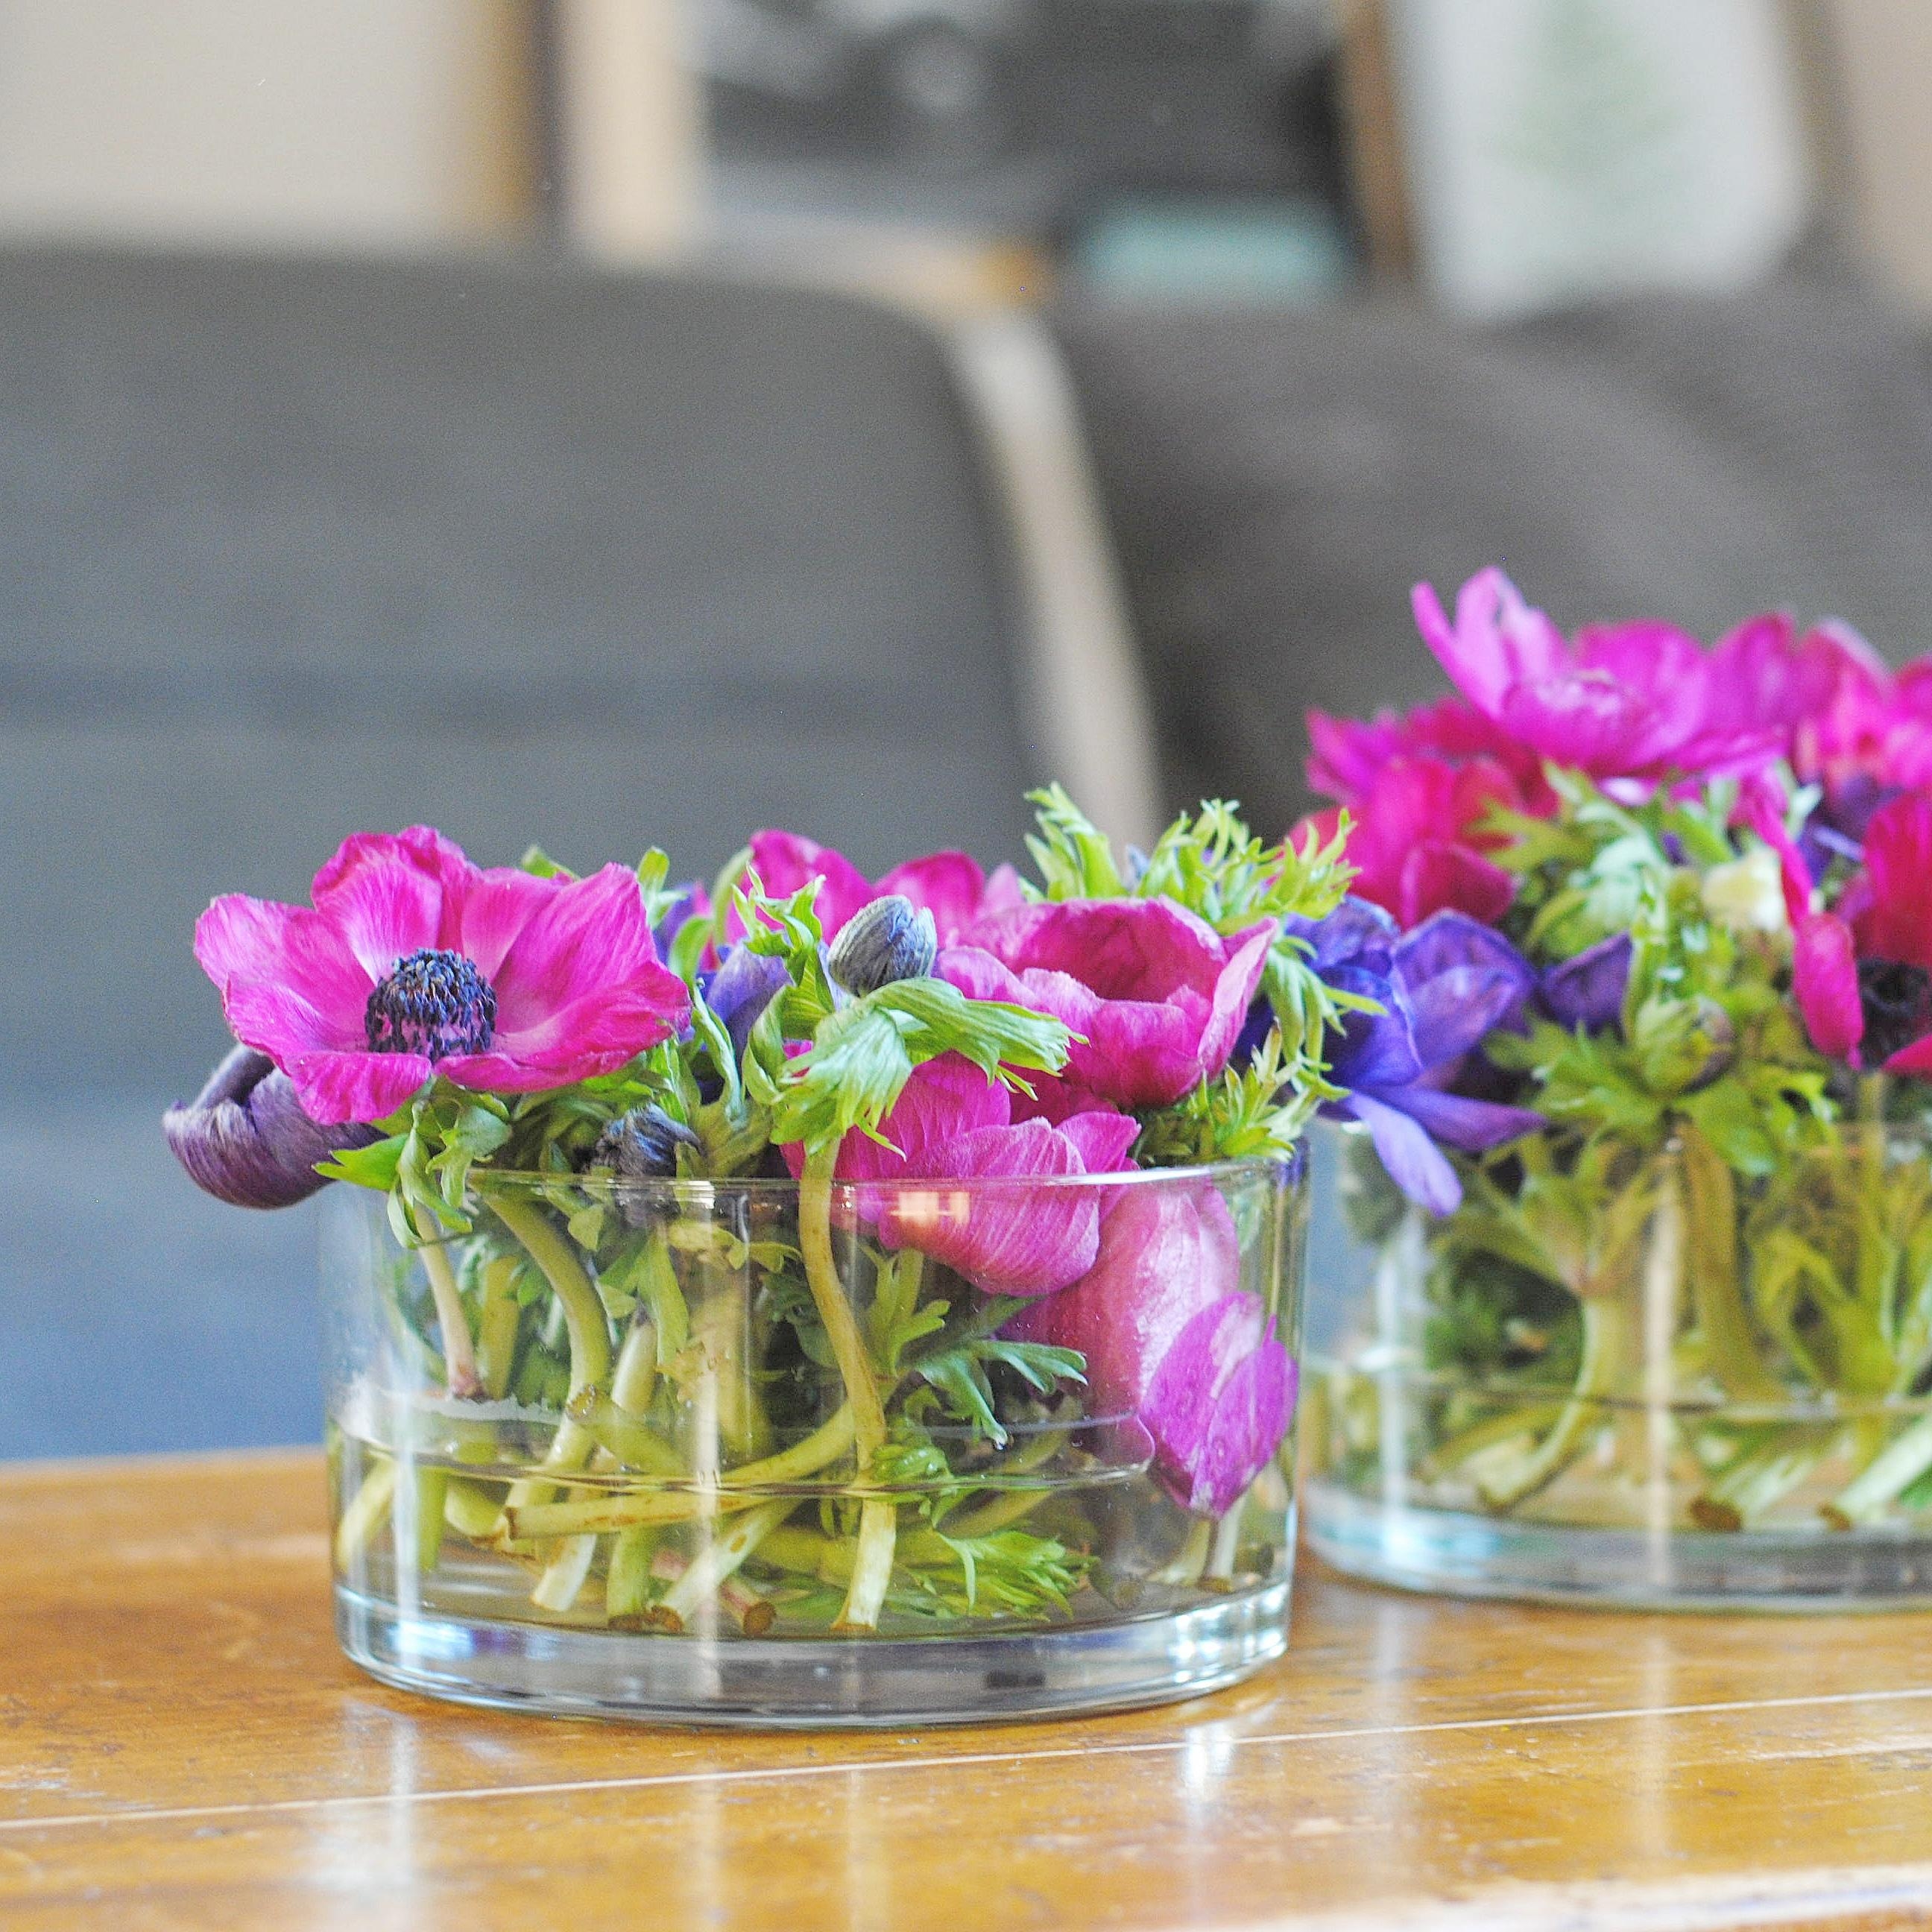 Der Adventskranz ist weggeräumt und durch frische Blumen ersetzt #anemone #freshflowers #couchliebt #skandistyle 